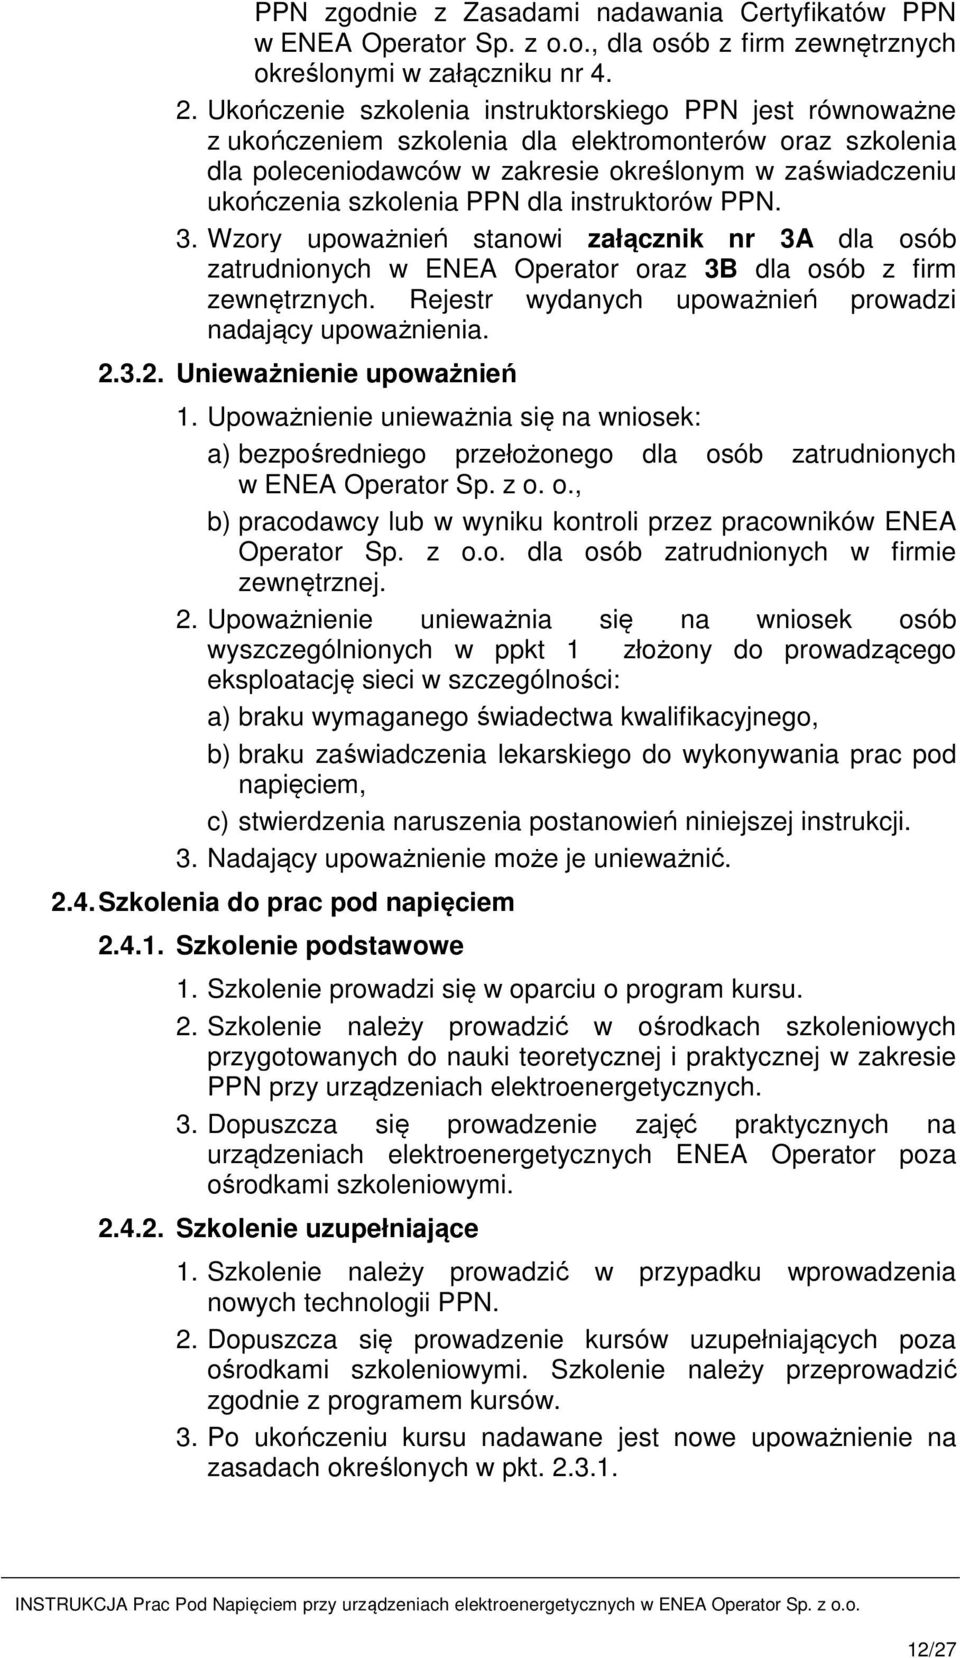 INSTRUKCJA Prac Pod Napięciem przy urządzeniach elektroenergetycznych w ENEA  Operator Sp. z o.o. - PDF Darmowe pobieranie